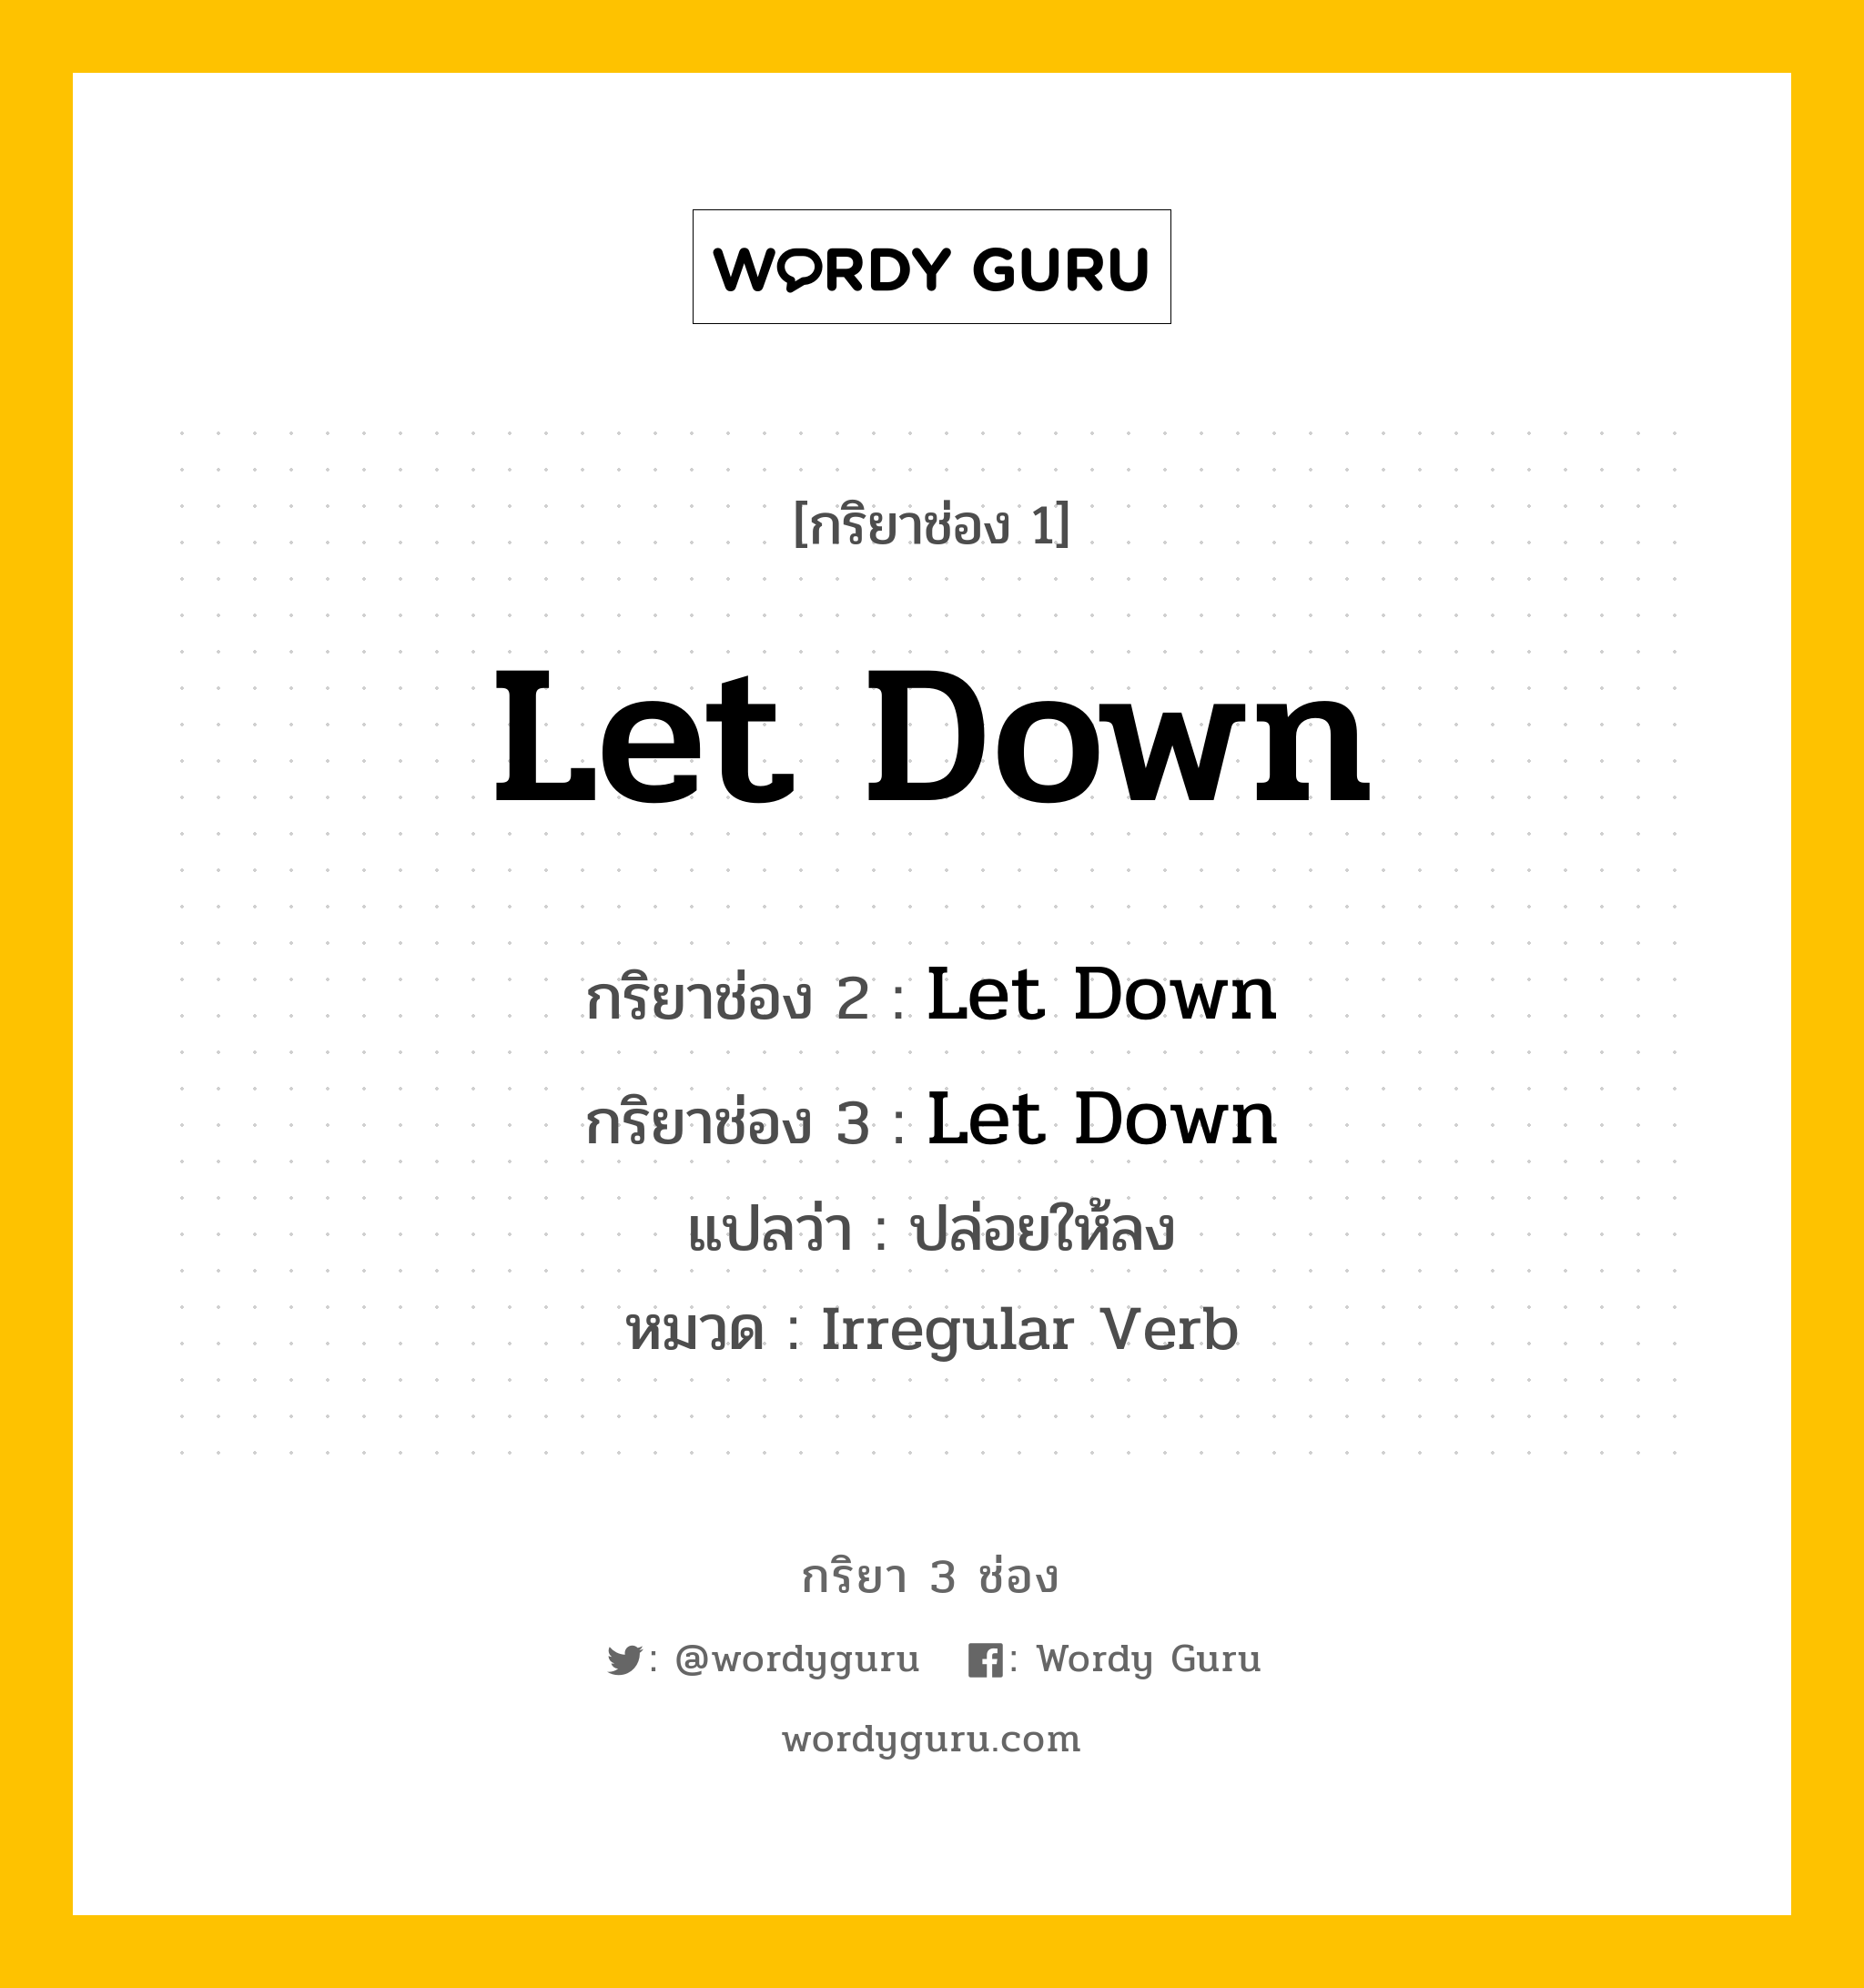 กริยา 3 ช่อง ของ Let Down คืออะไร? มาดูคำอ่าน คำแปลกันเลย, กริยาช่อง 1 Let Down กริยาช่อง 2 Let Down กริยาช่อง 3 Let Down แปลว่า ปล่อยให้ลง หมวด Irregular Verb หมวด Irregular Verb